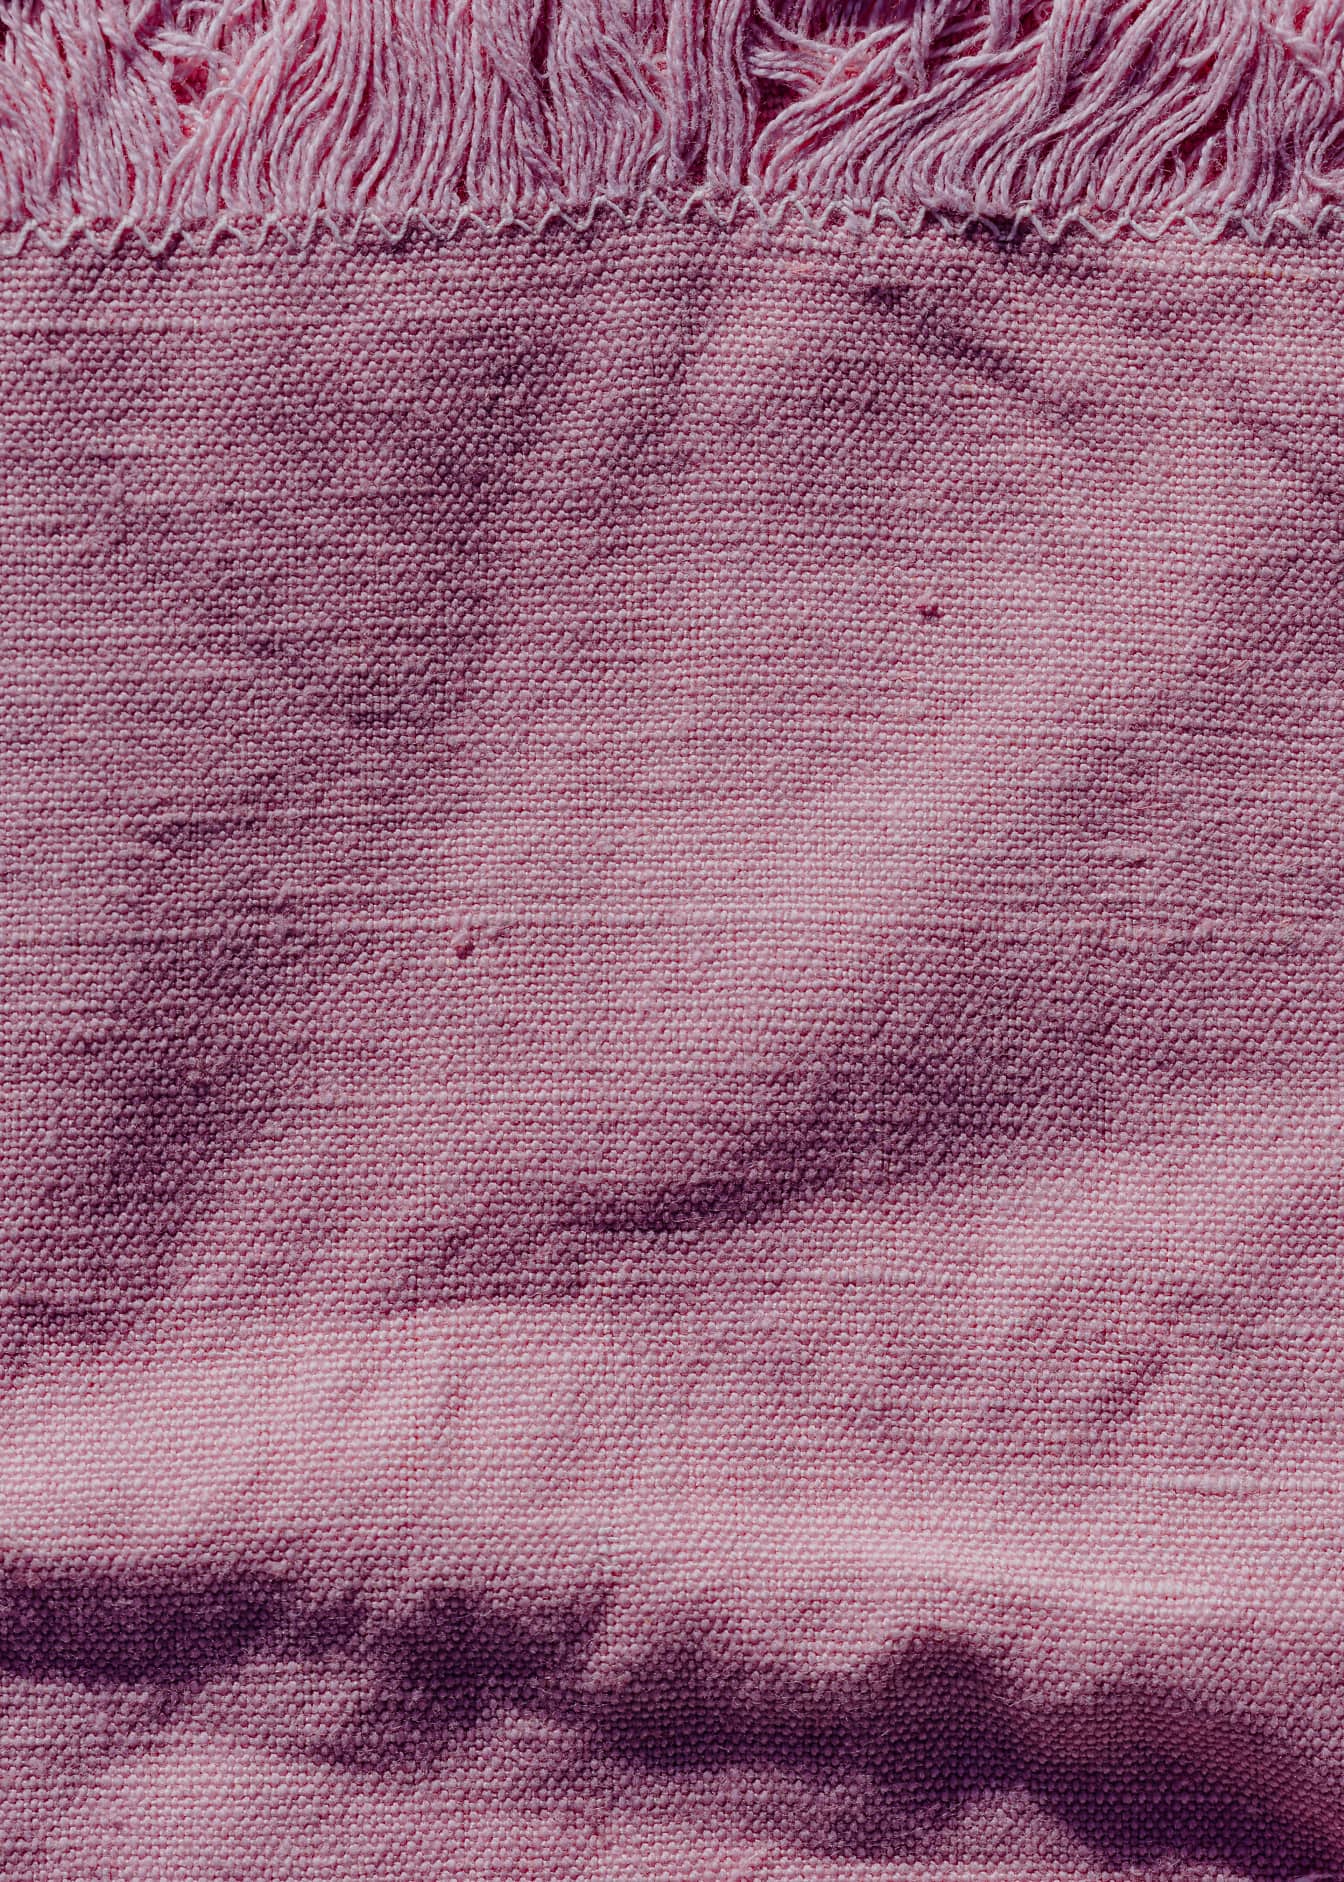 Фактура из грубой льняной розоватой ткани с бахромой по краю